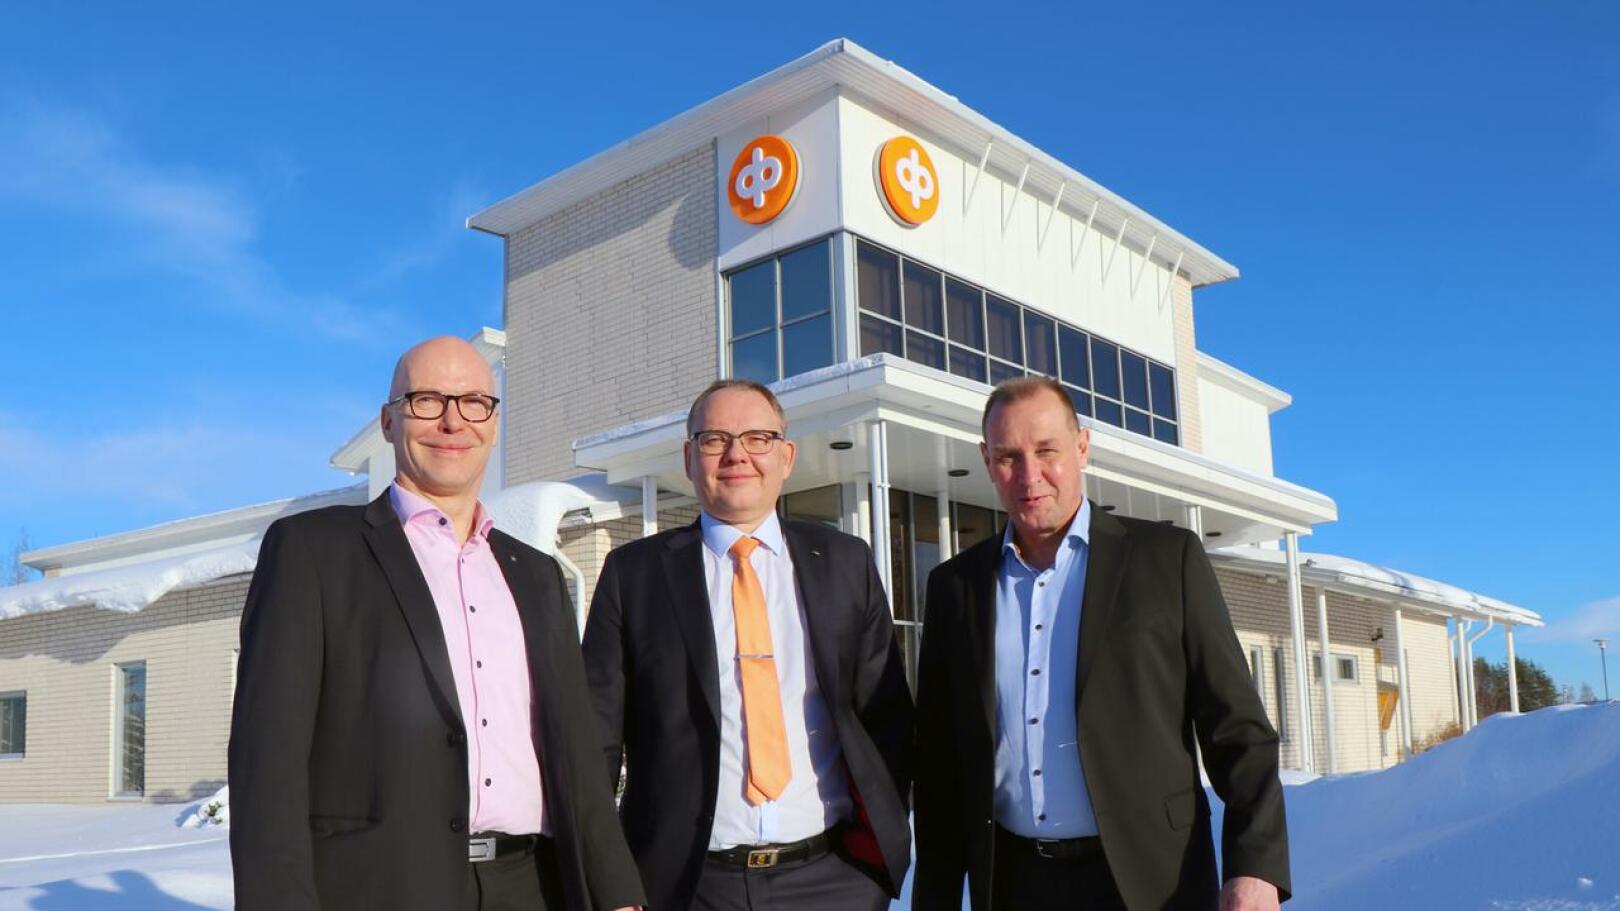 Joki-Pohjanmaan Osuuspankin varatoimitusjohtaja Pekka Pajula, toimitusjohtaja Markku J. Niskala ja pankinjohtaja Kari Haanmäki ovat tyytyväisiä fuusioituneiden pankkien yhteistoimintaan.